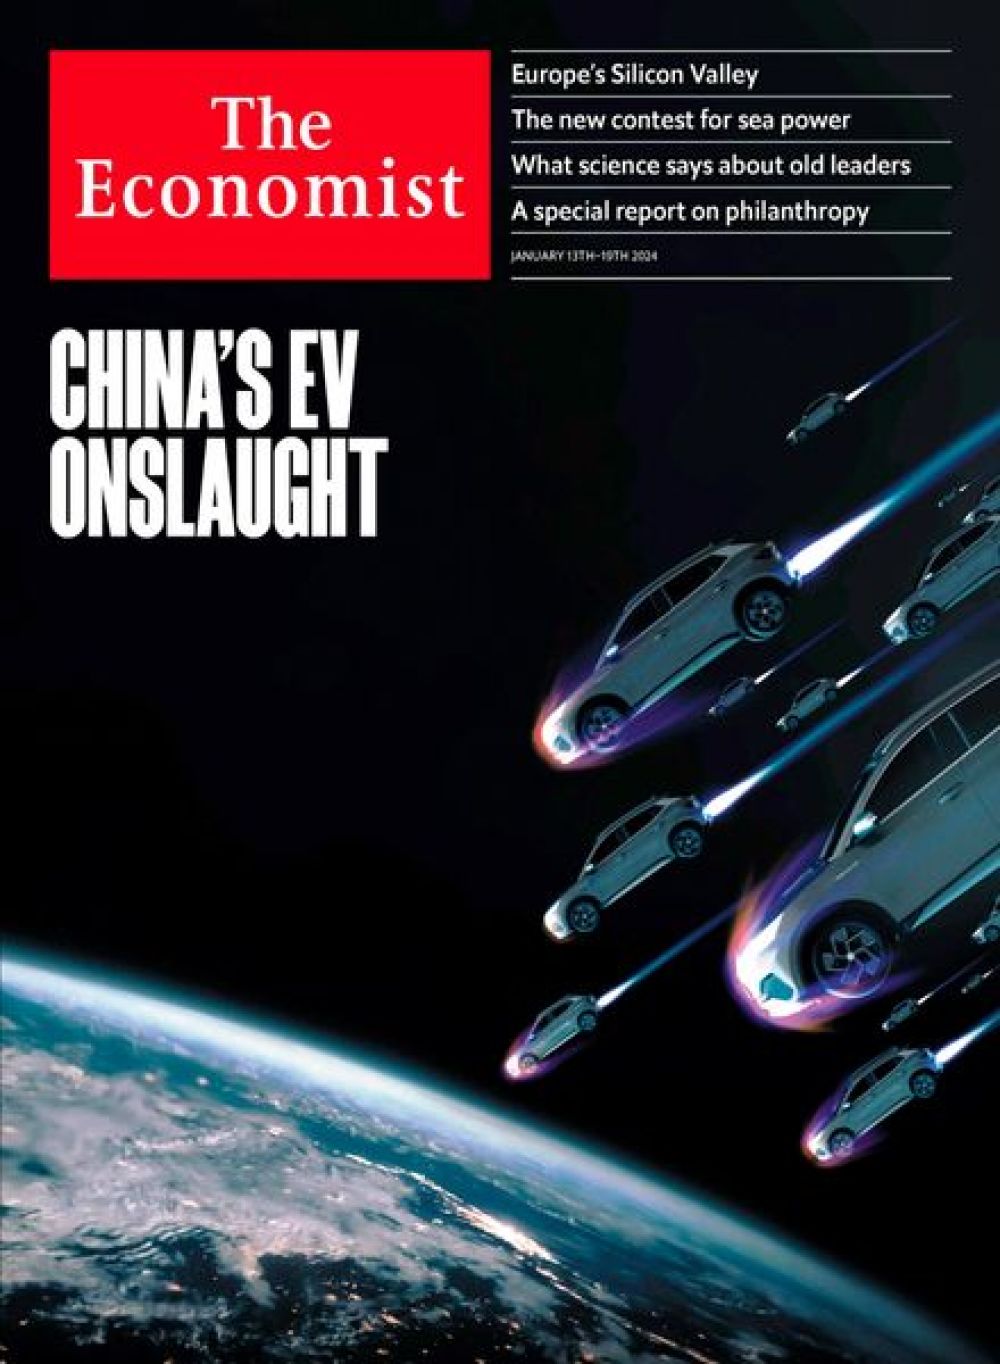 Китайские автопроизводители активно проявляют себя на глобальном автомобильном рынке. Особенный упор сейчас делается на производство электрокаров. С одной стороны, переход на «зеленые» авто может хорошо сказаться на экологии, с другой, по версии британского The Economist («Экономист»), есть опасения по поводу деиндустриализации в мировом машиностроении: многим автопроизводителям грозит столкнуться с уменьшением объема производства или даже остановкой деятельности.